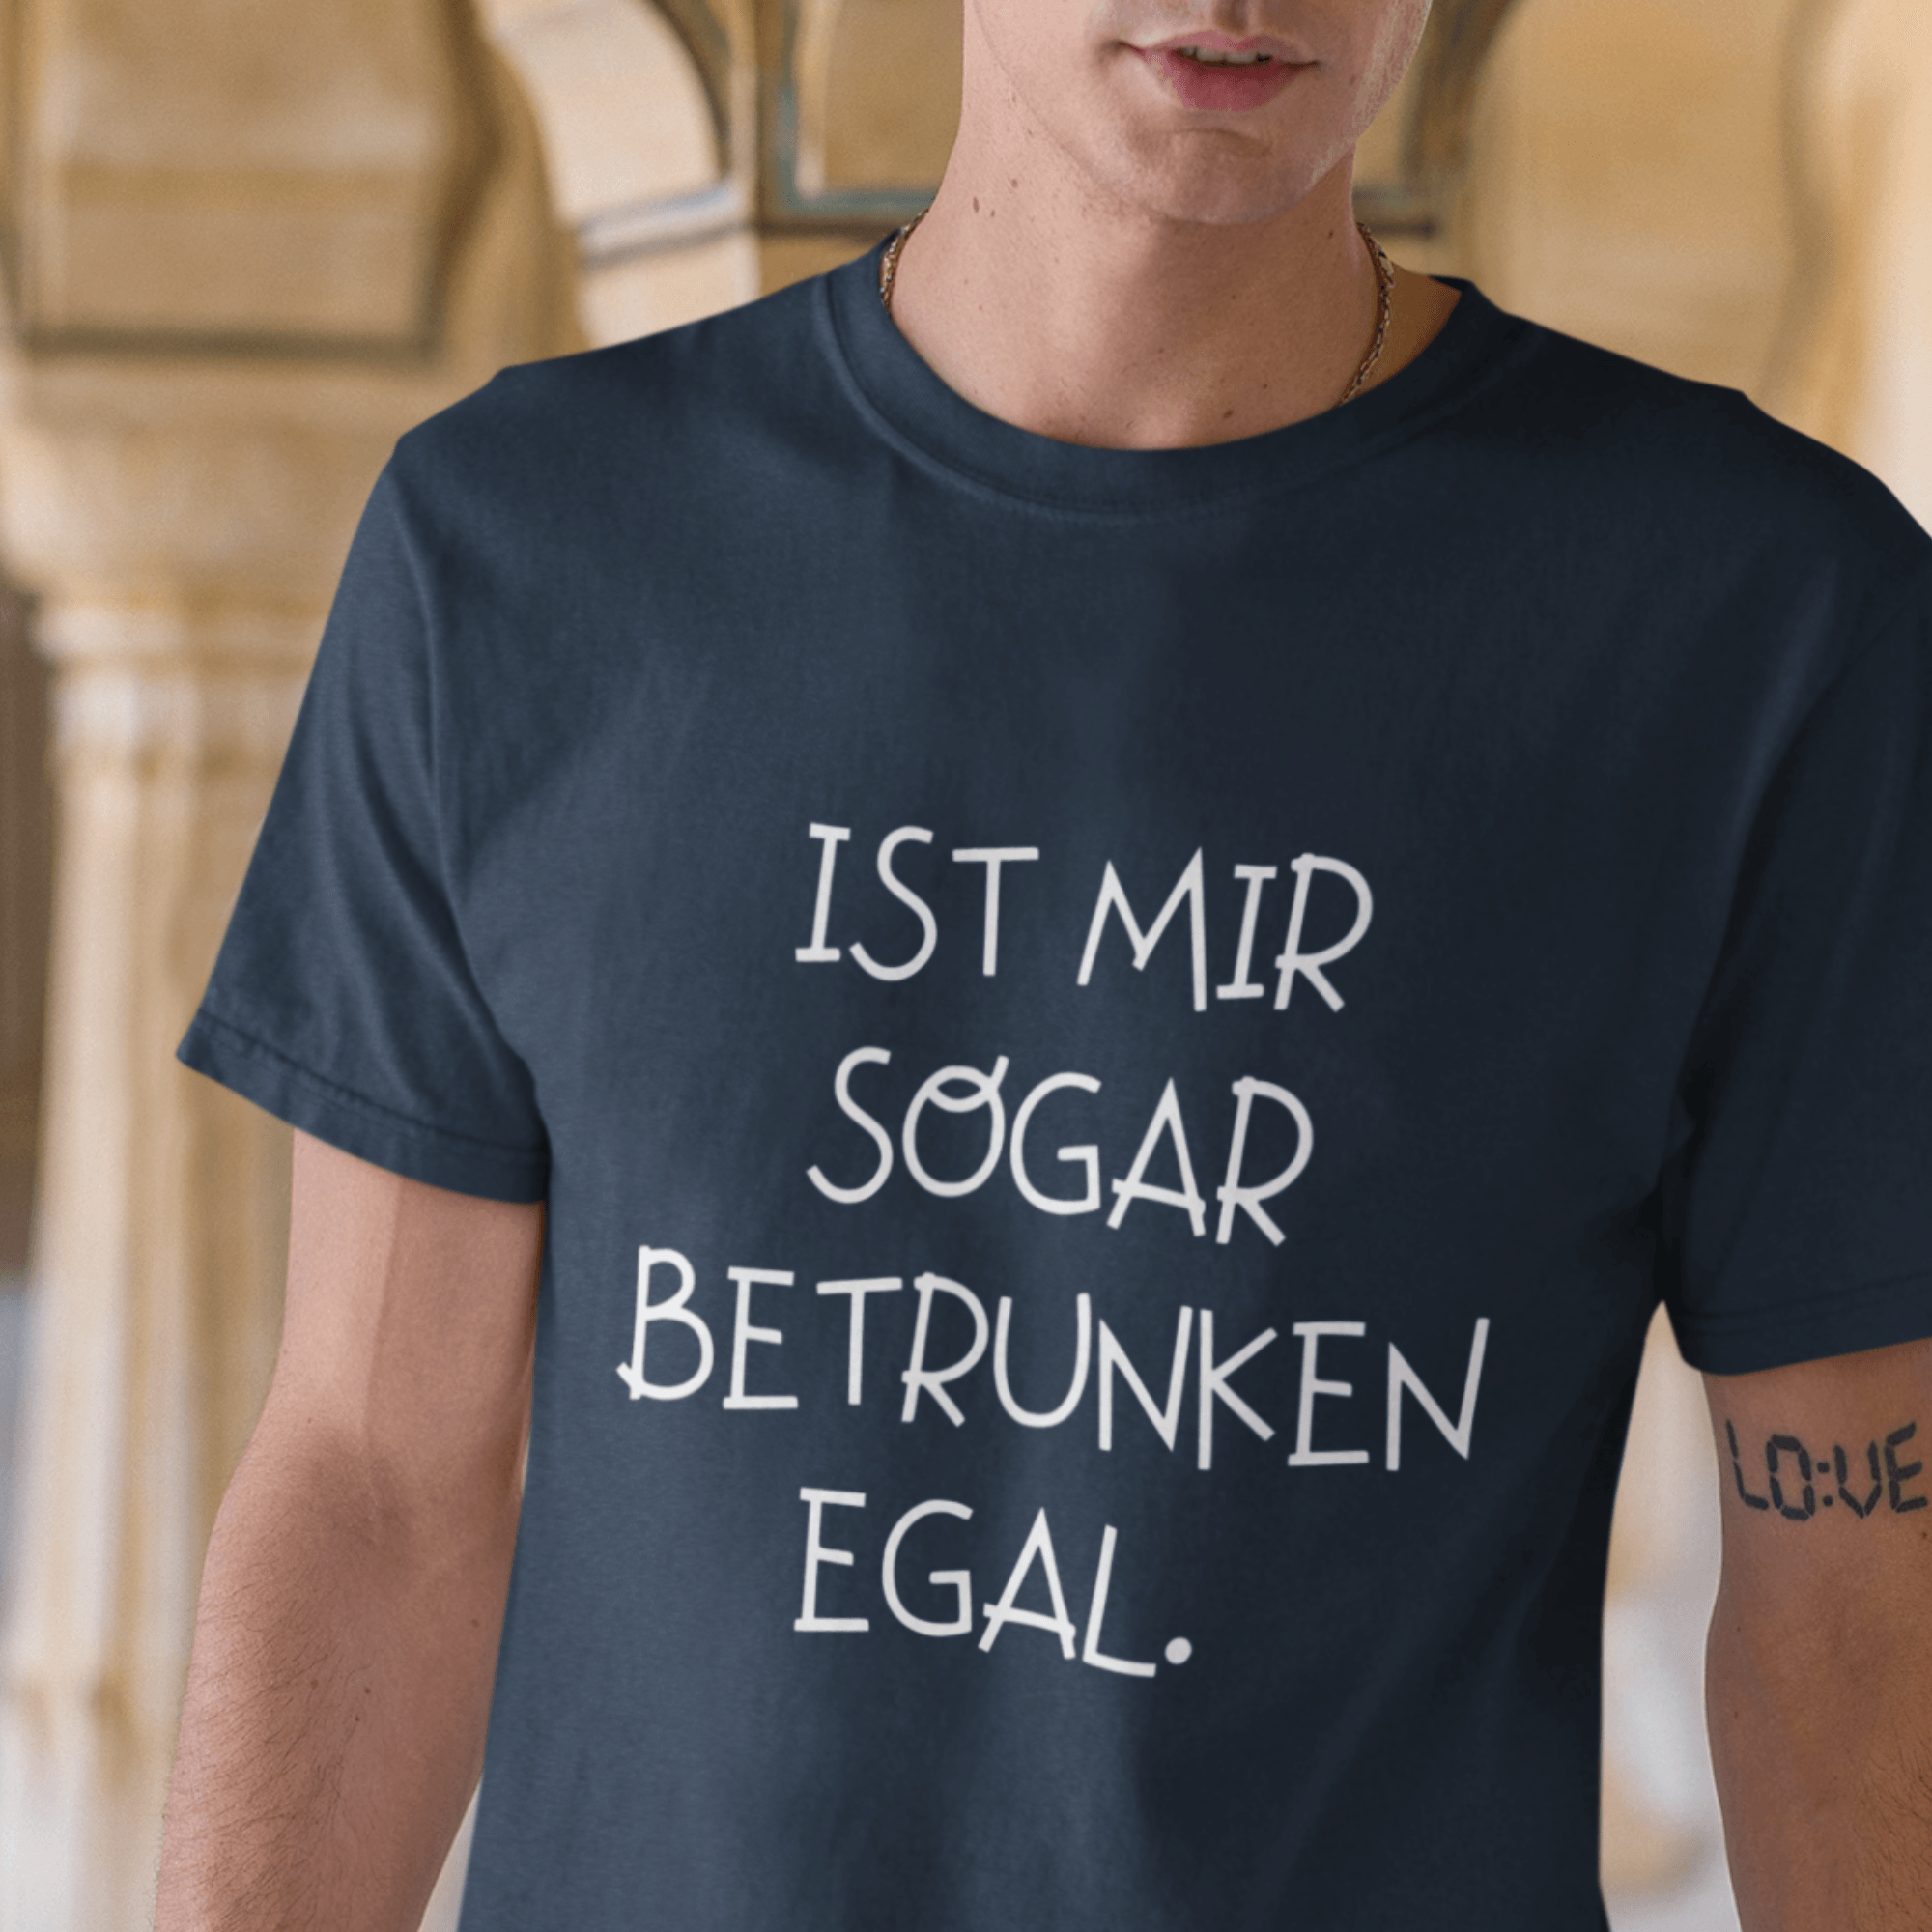 BETRUNKEN EGAL - Herren Shirt - einschenken24.de